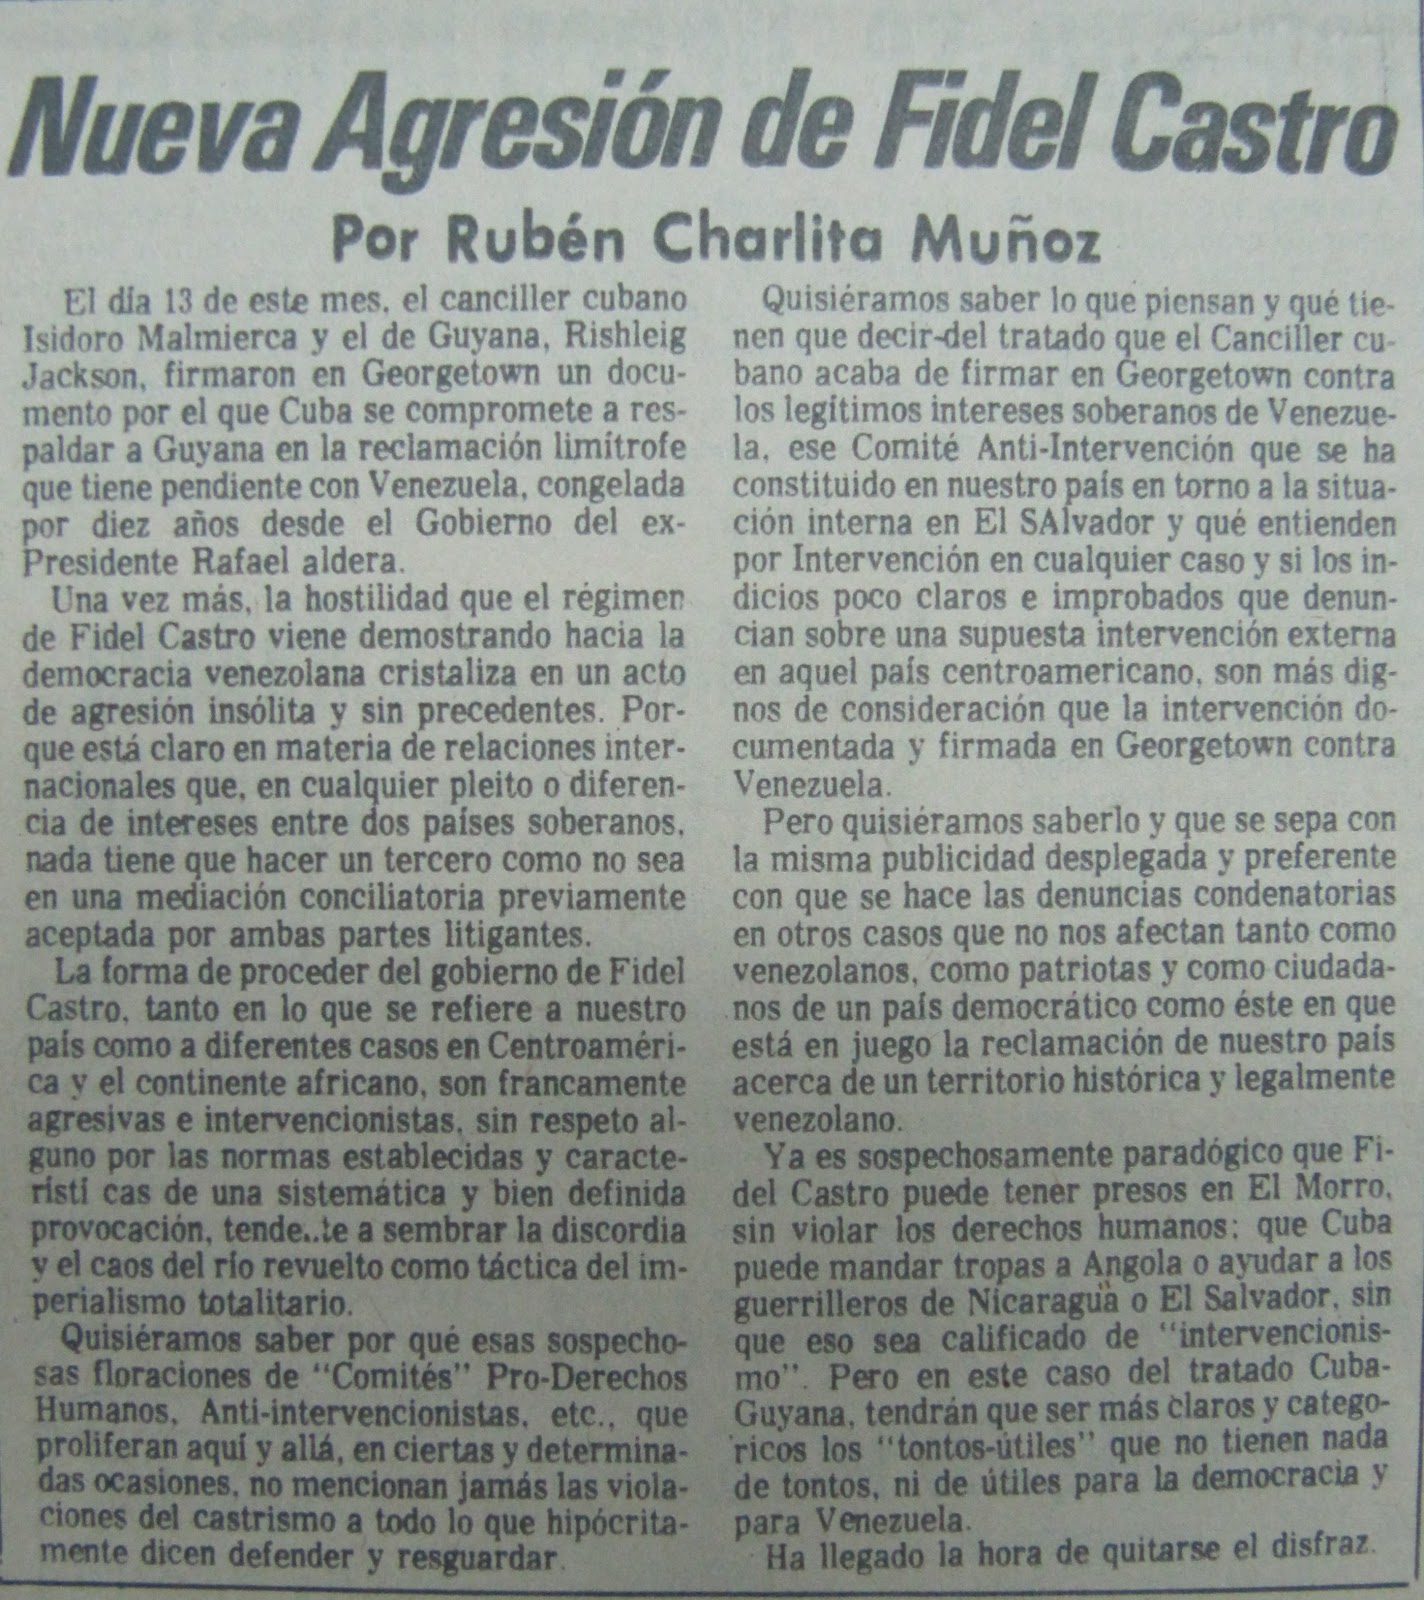 Buques Logisticos - Página 23 Ruben+Charlita+Mu%25C3%25B1oz+Nueva+Agrecion+de+Fidel+Castro